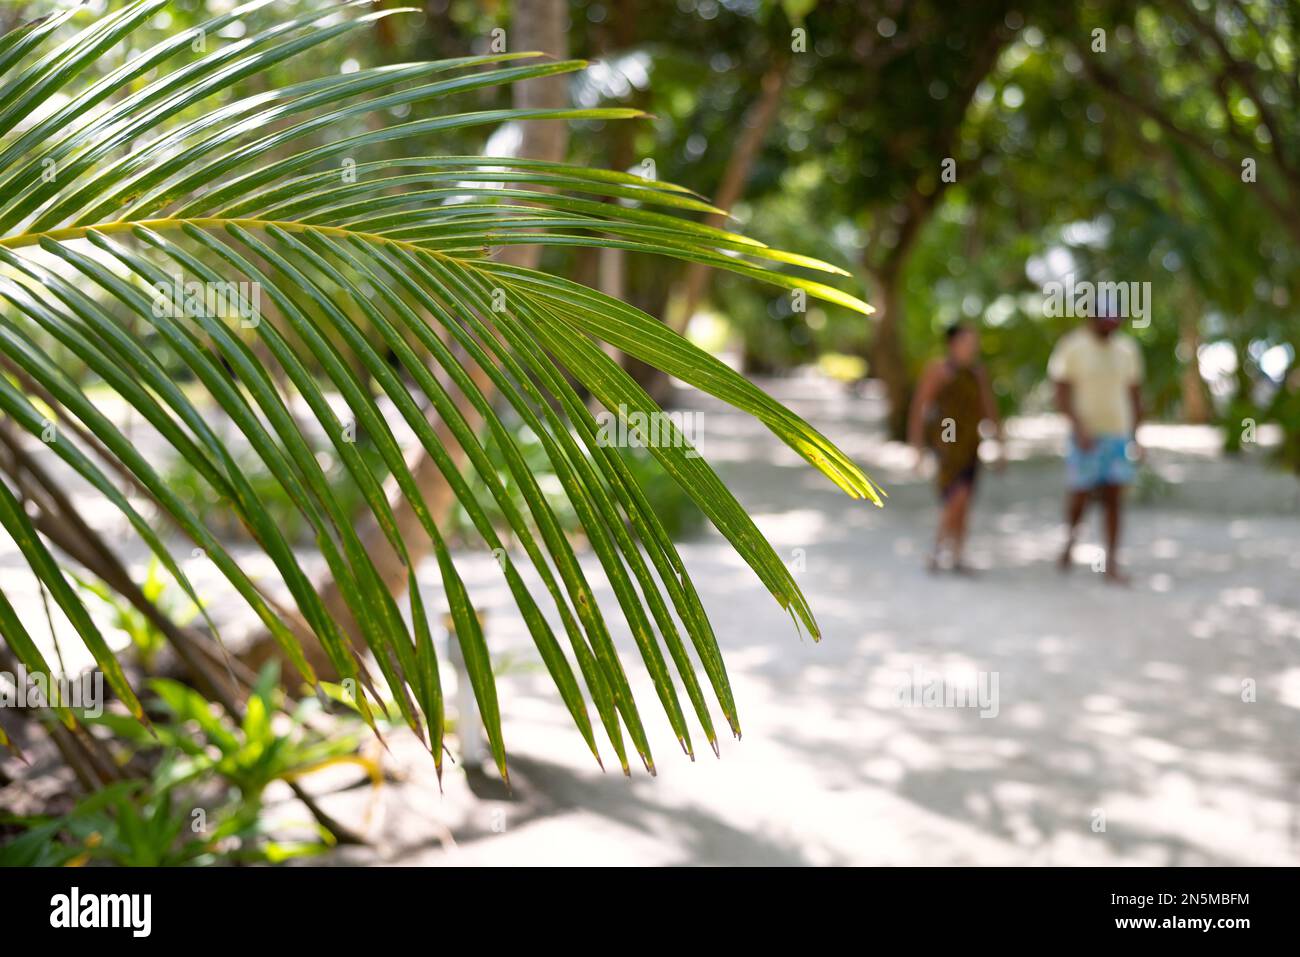 Malediven Szene - Palmenblätter und Menschen in der Landschaft, Rasdhoo Atoll, Malediven tropische Inseln, Asien Stockfoto